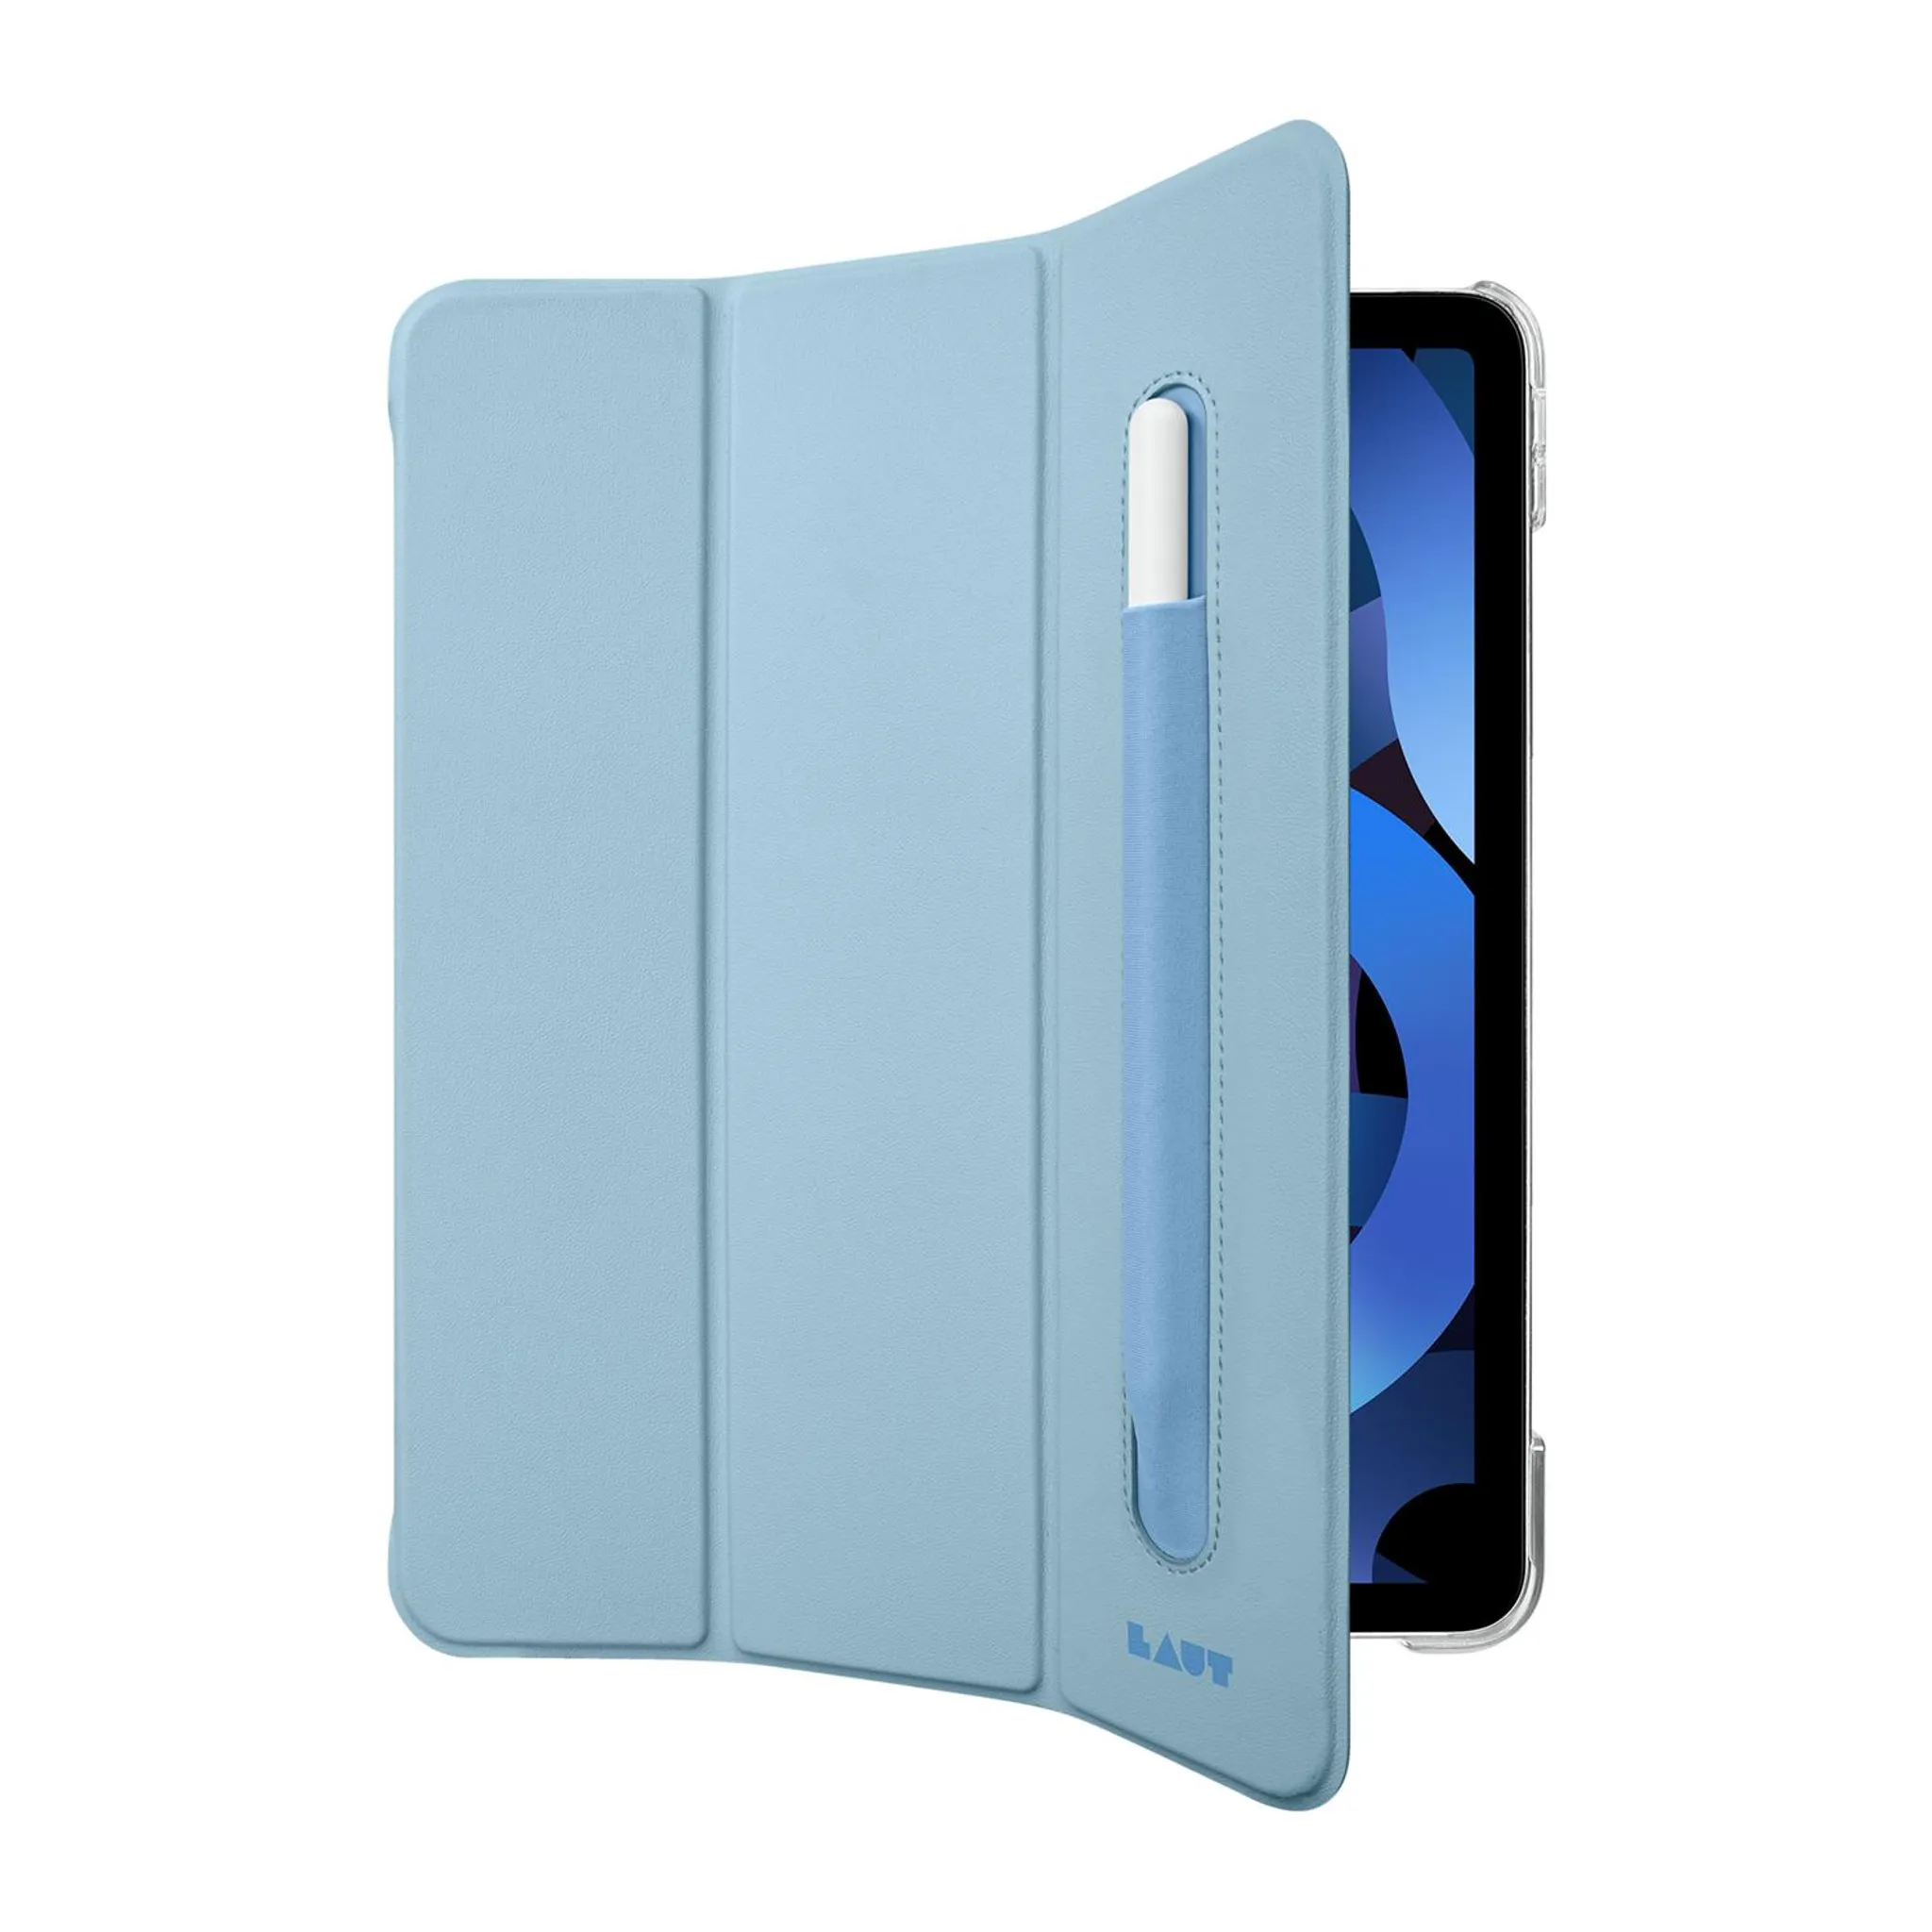 Casecentive Handstrap Coque iPad 10.2 Noire